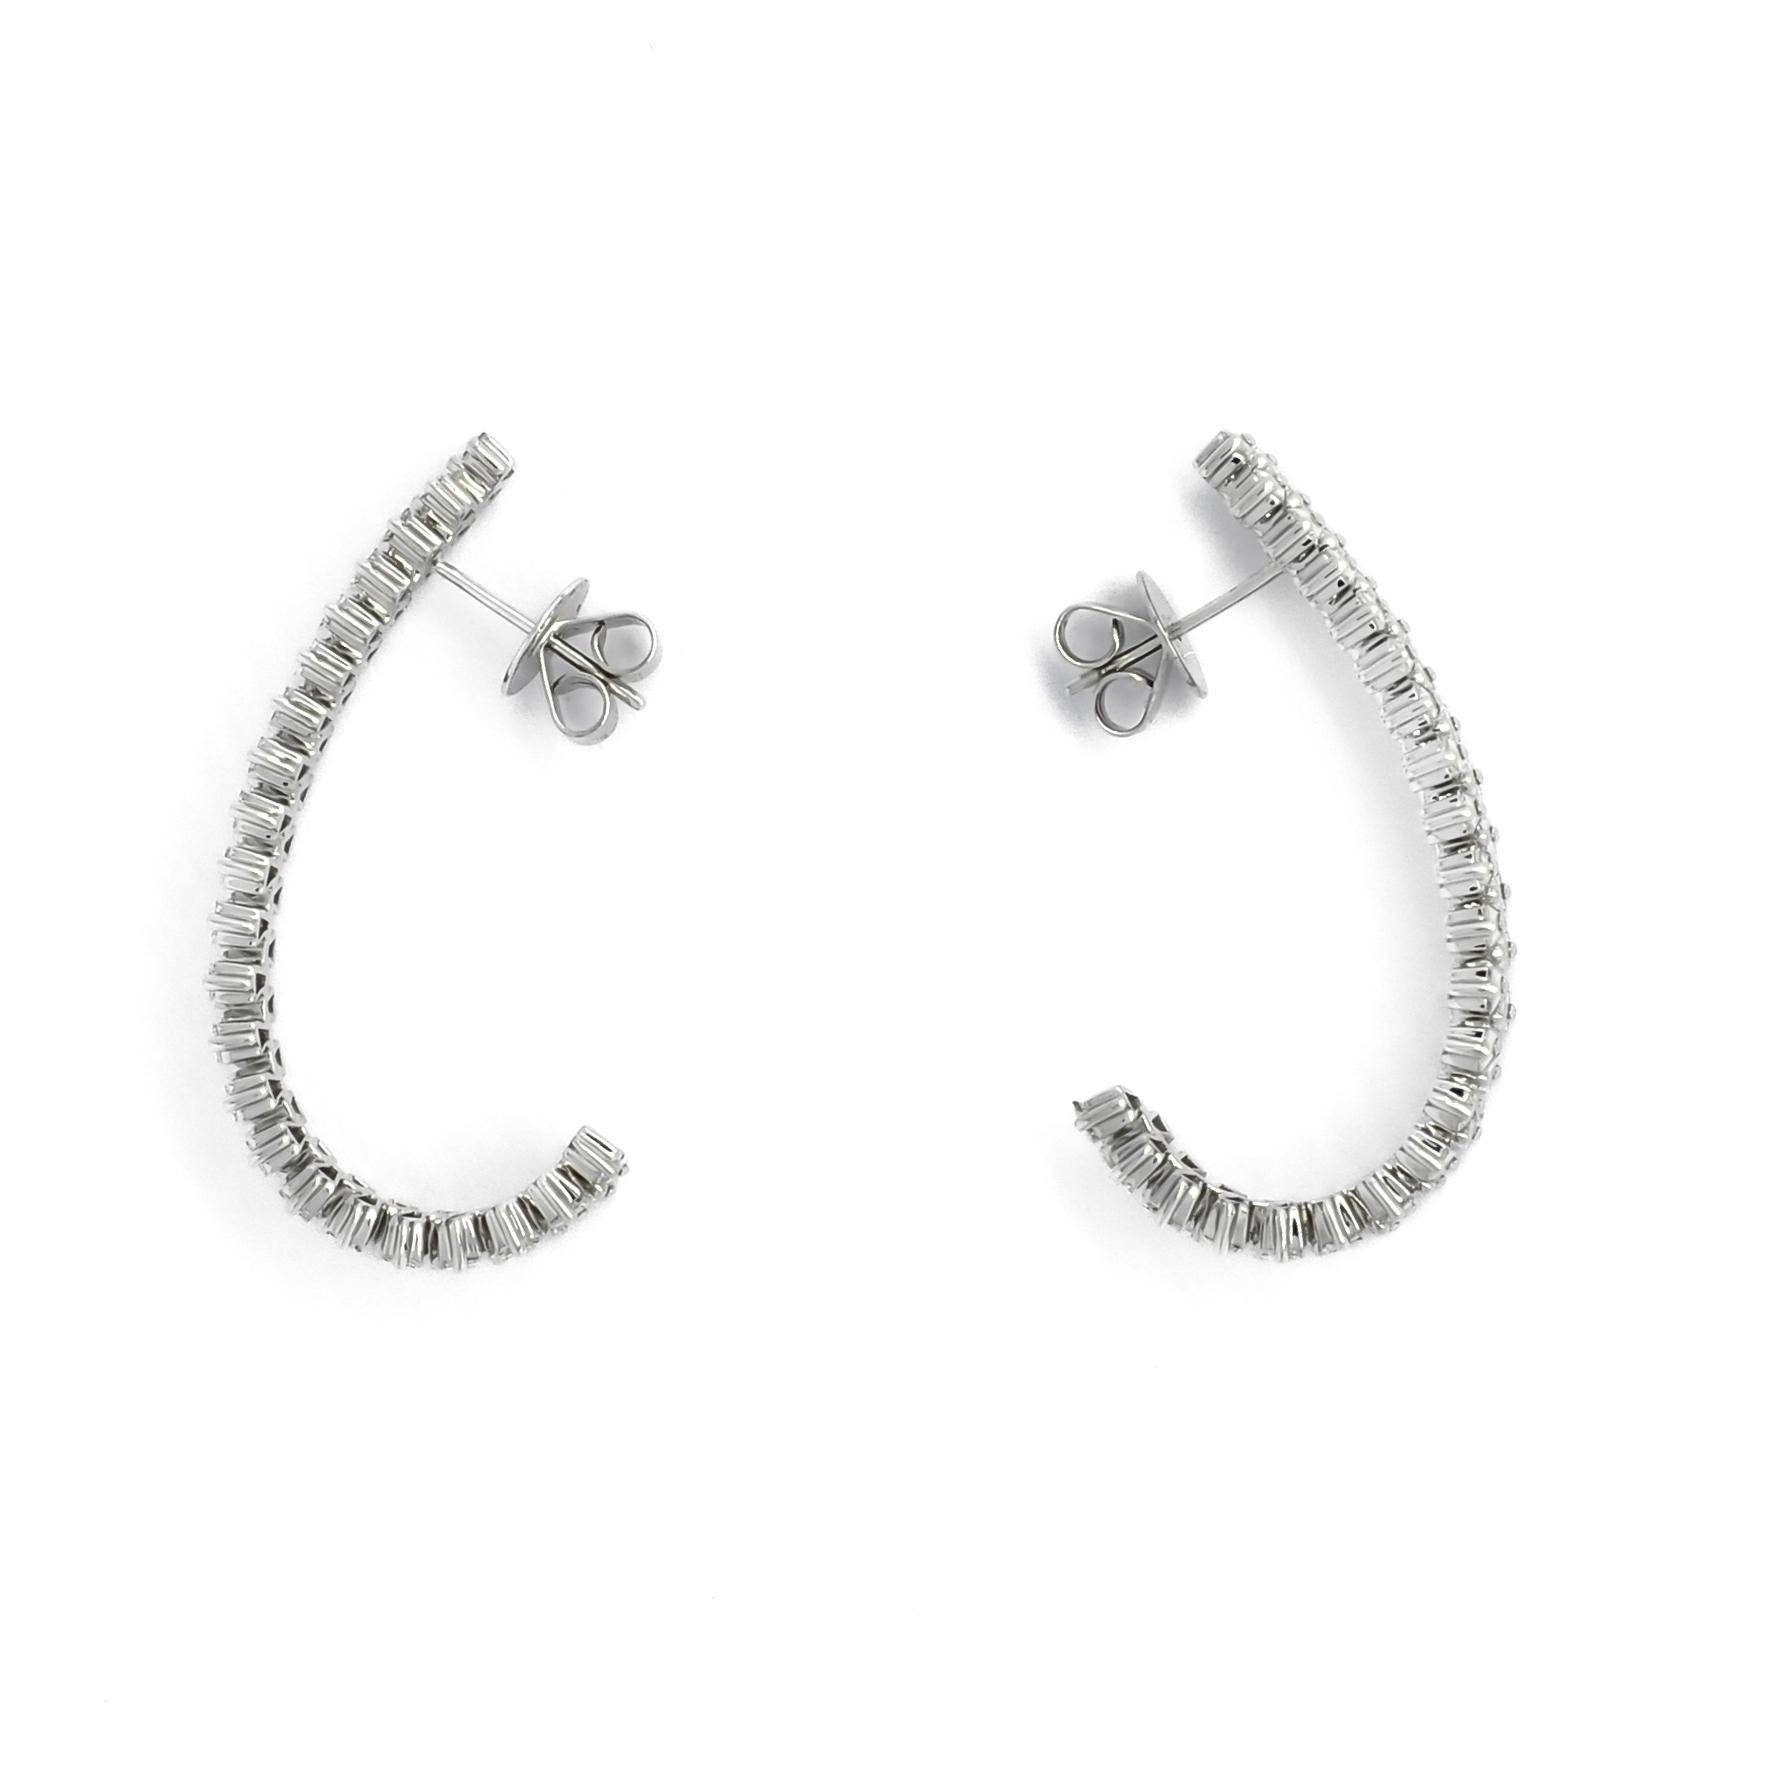 Baguette Cut Natural Diamond Earrings 4.12 ct 18KT White Gold Half Hoop Earrings E087242 For Sale